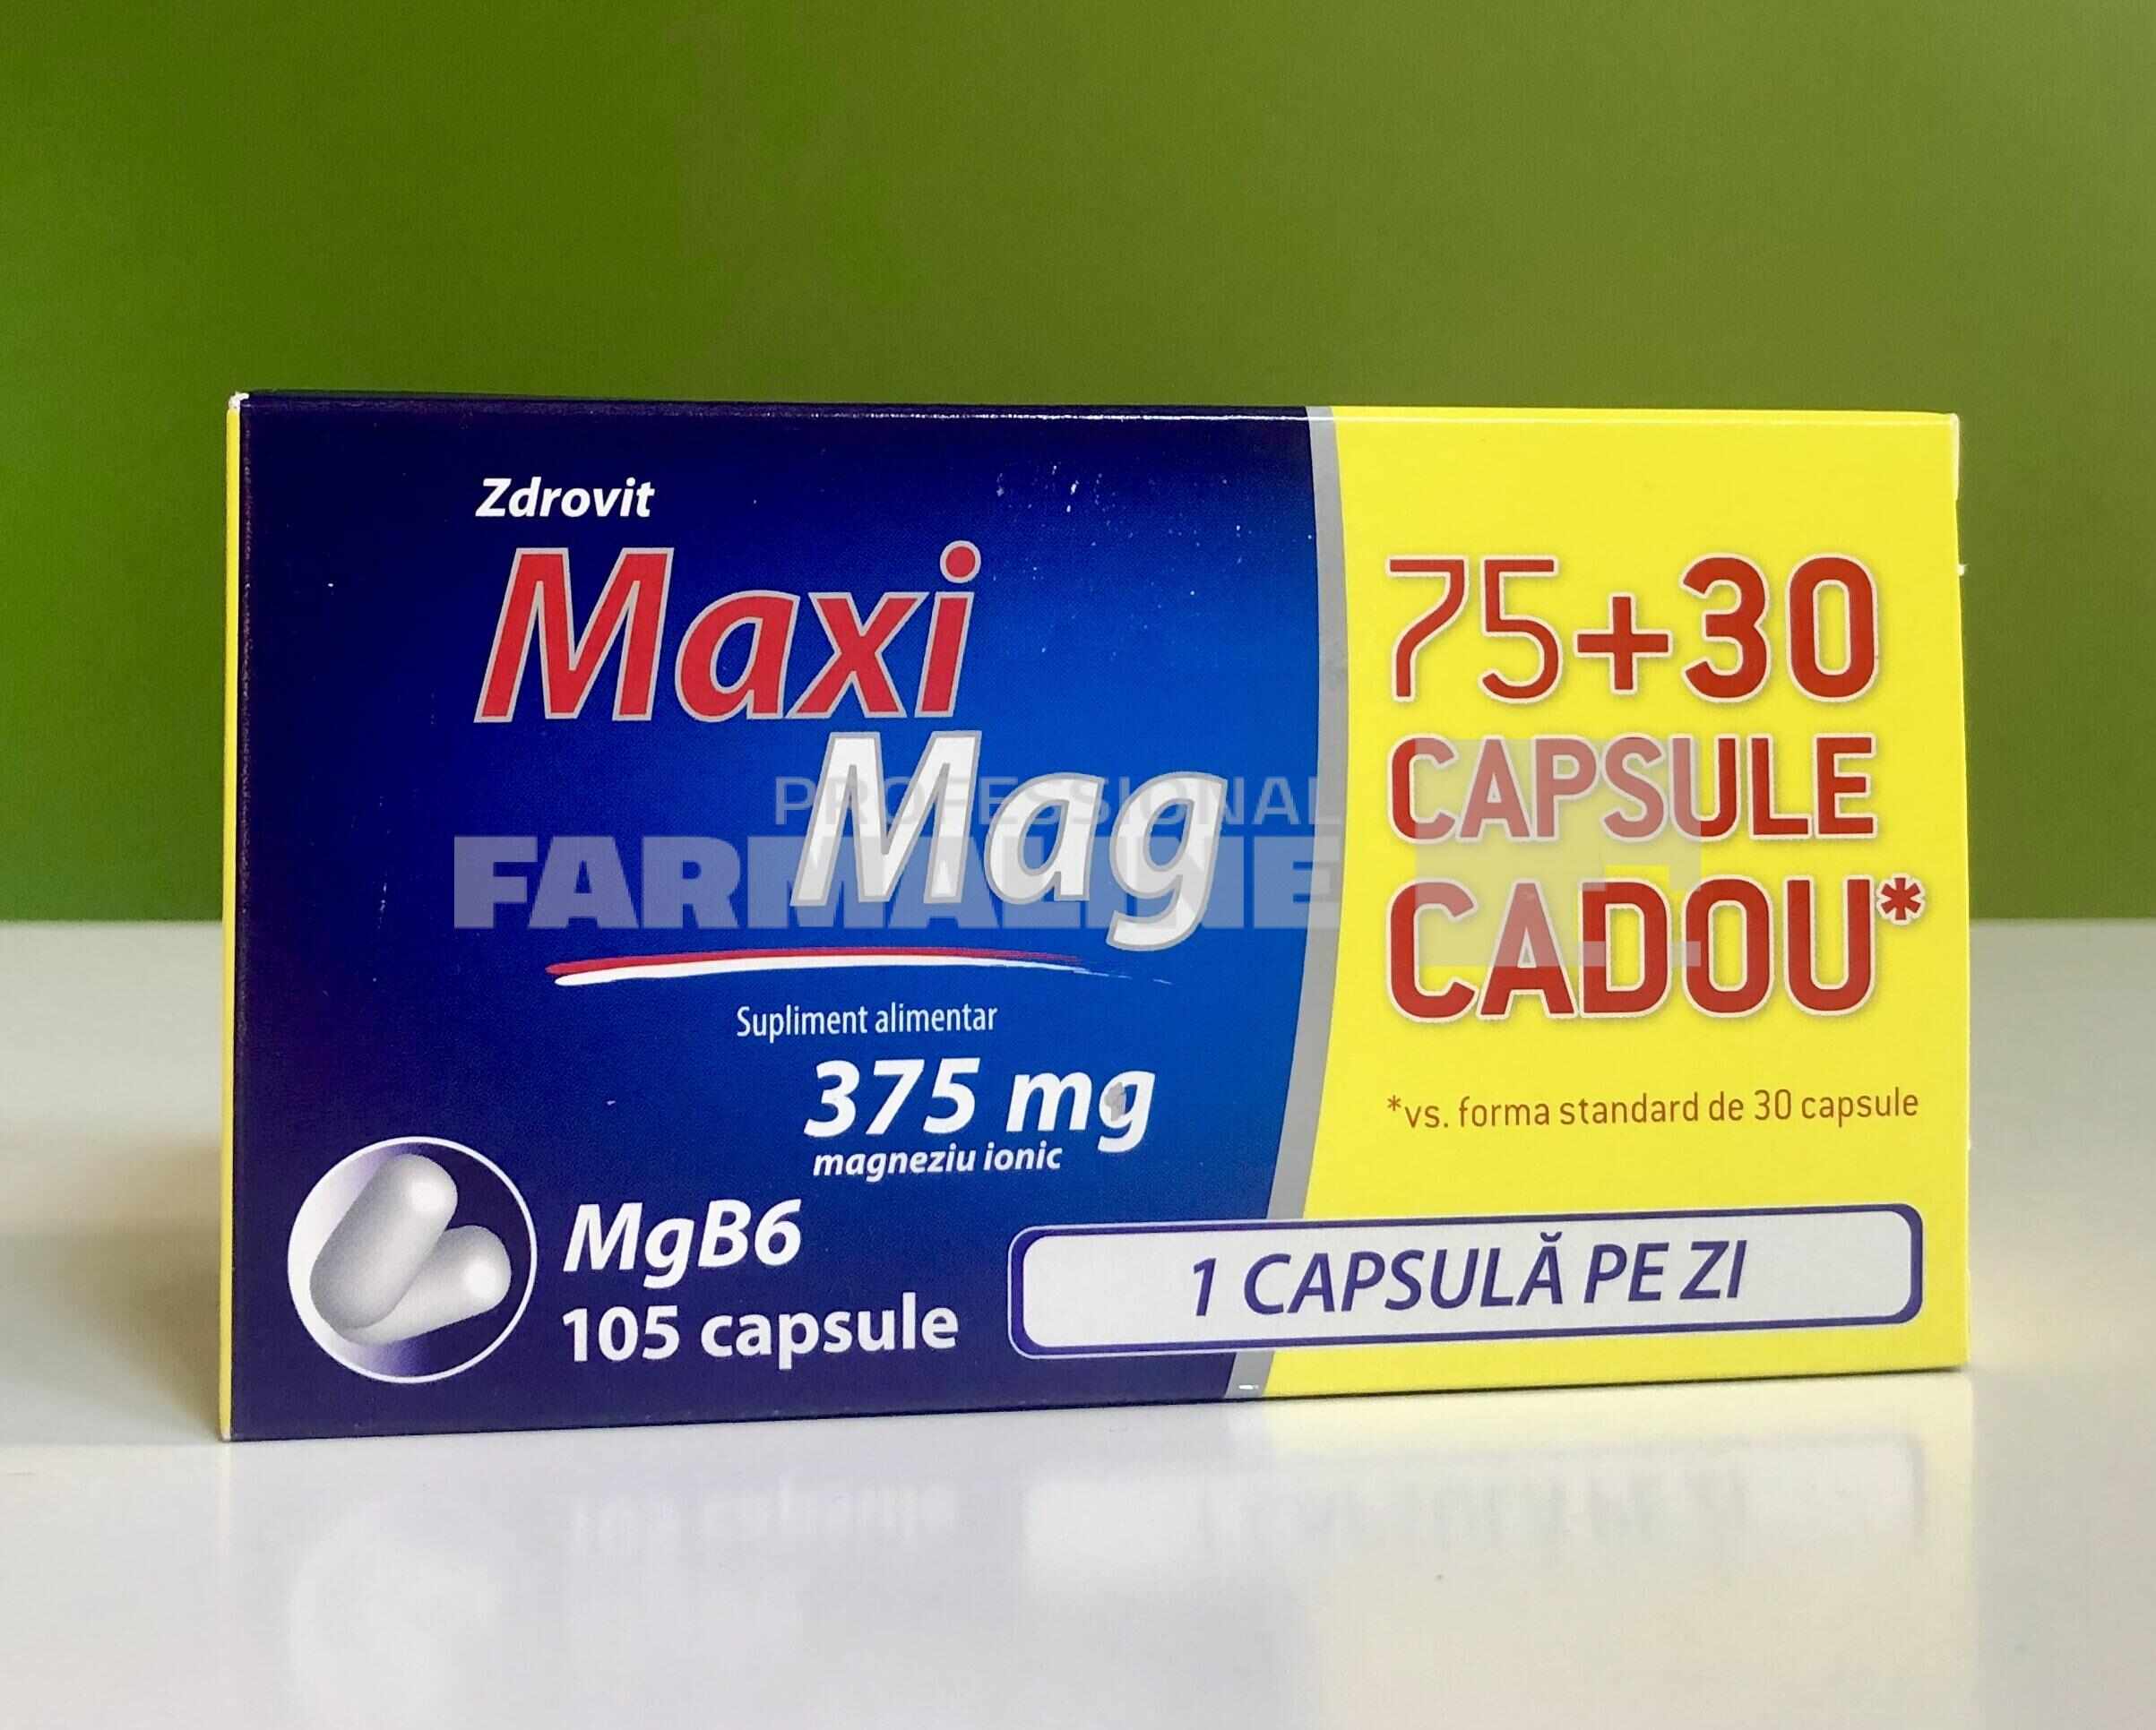 Maxi Mag 75 capsule + 30 capsule Cadou